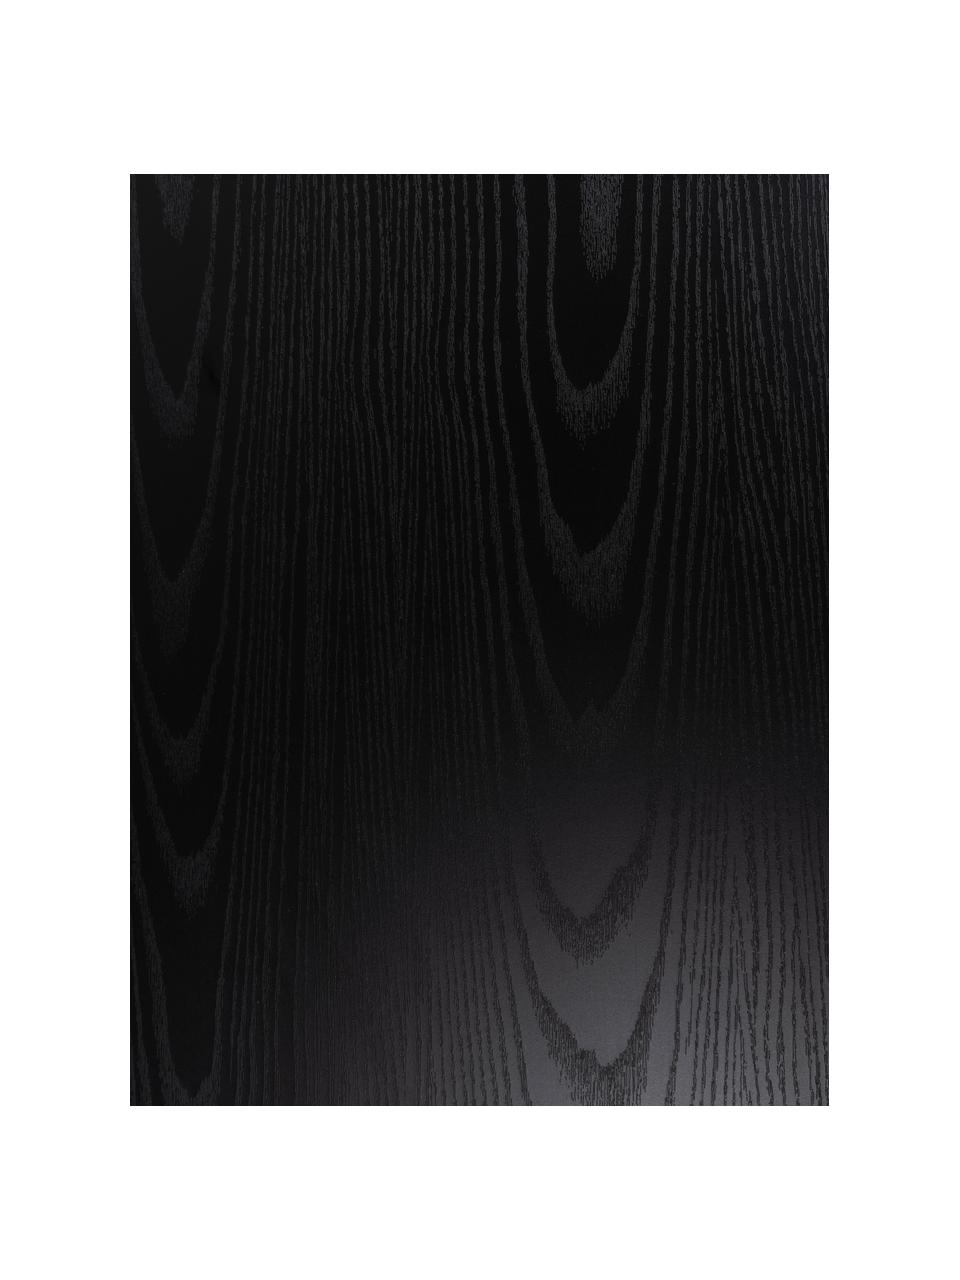 Mesa de centro Seaford, Tablero: fibras de densidad media , Estructura: metal con pintura en polv, Negro, An 80 x Al 45 cm